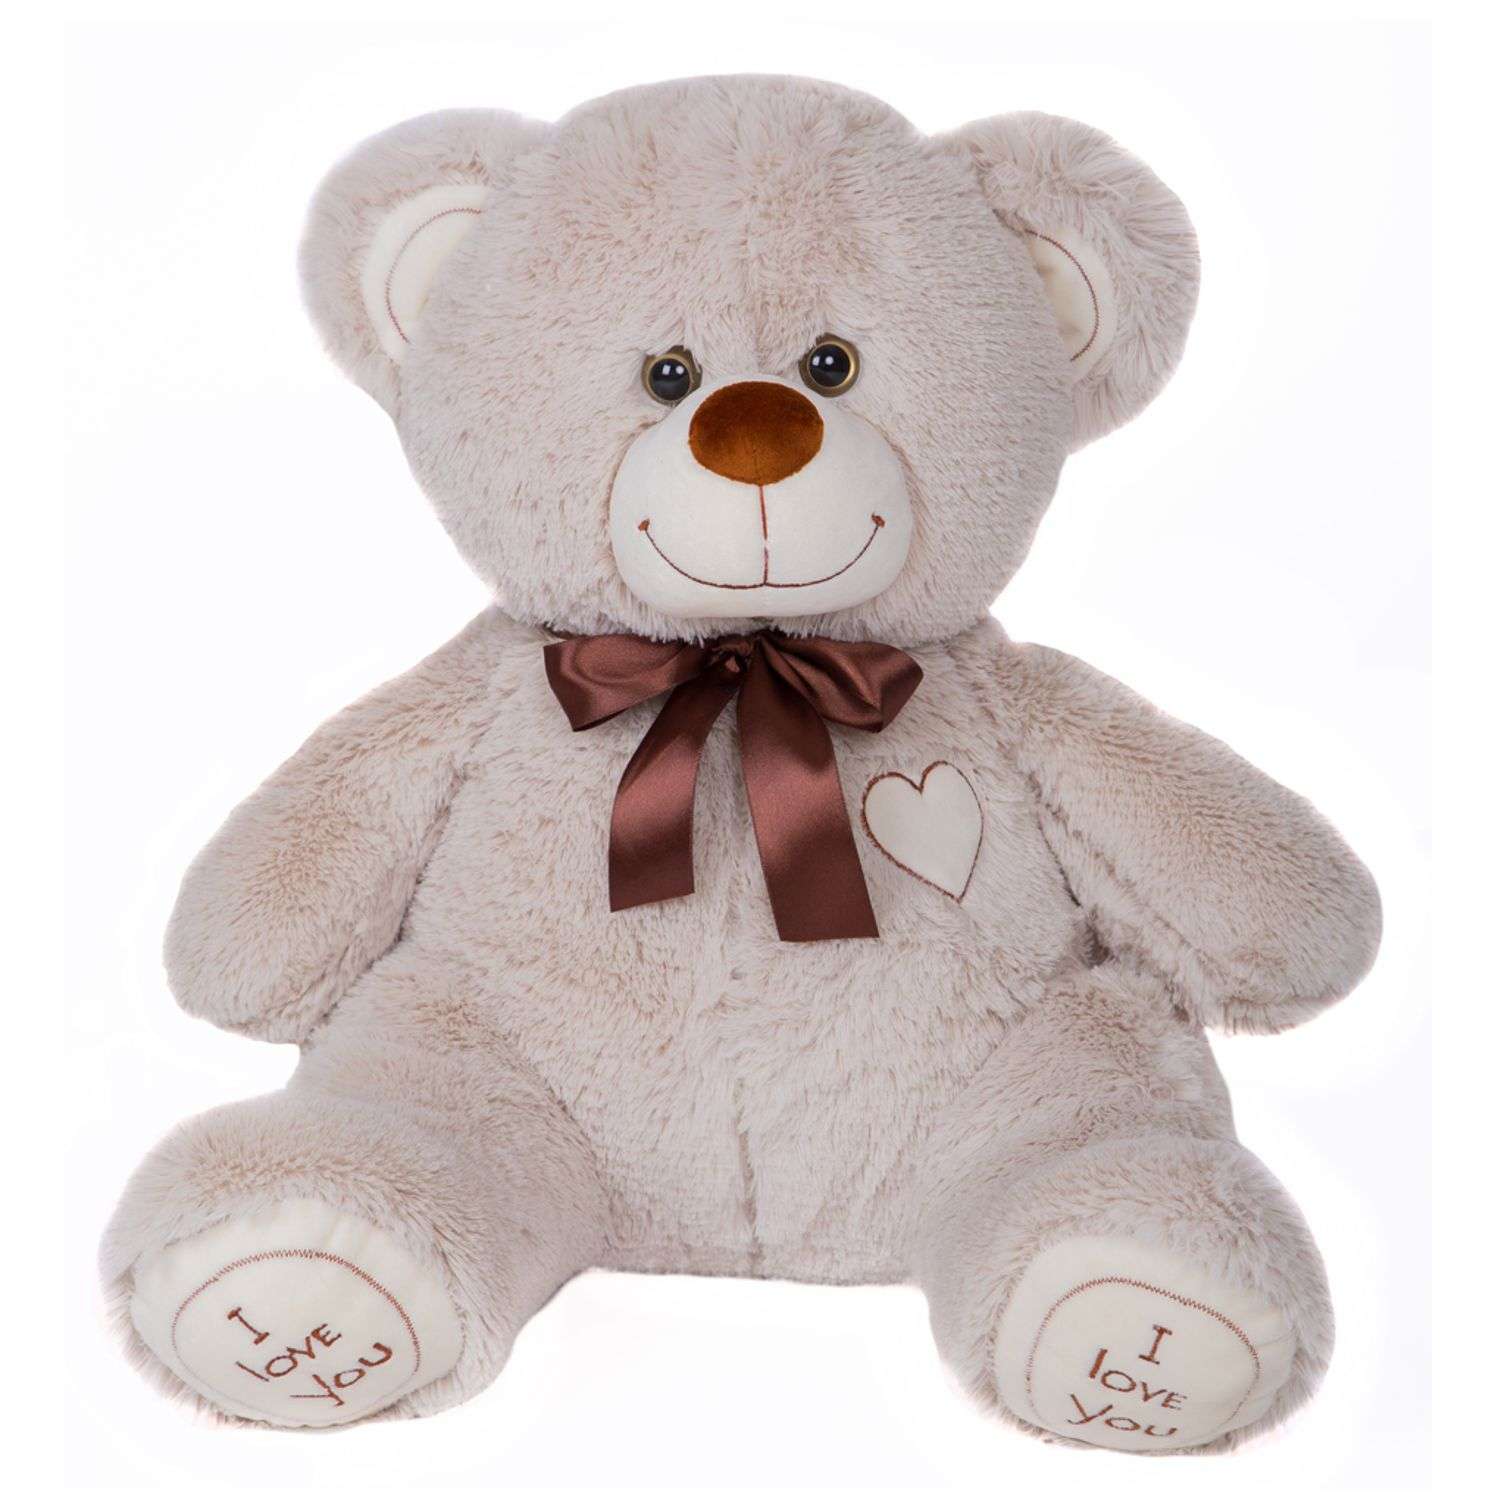 Мягкая игрушка Мягкие игрушки БелайТойс Плюшевый медведь Арчи 65 см цвет светло-серый - фото 1